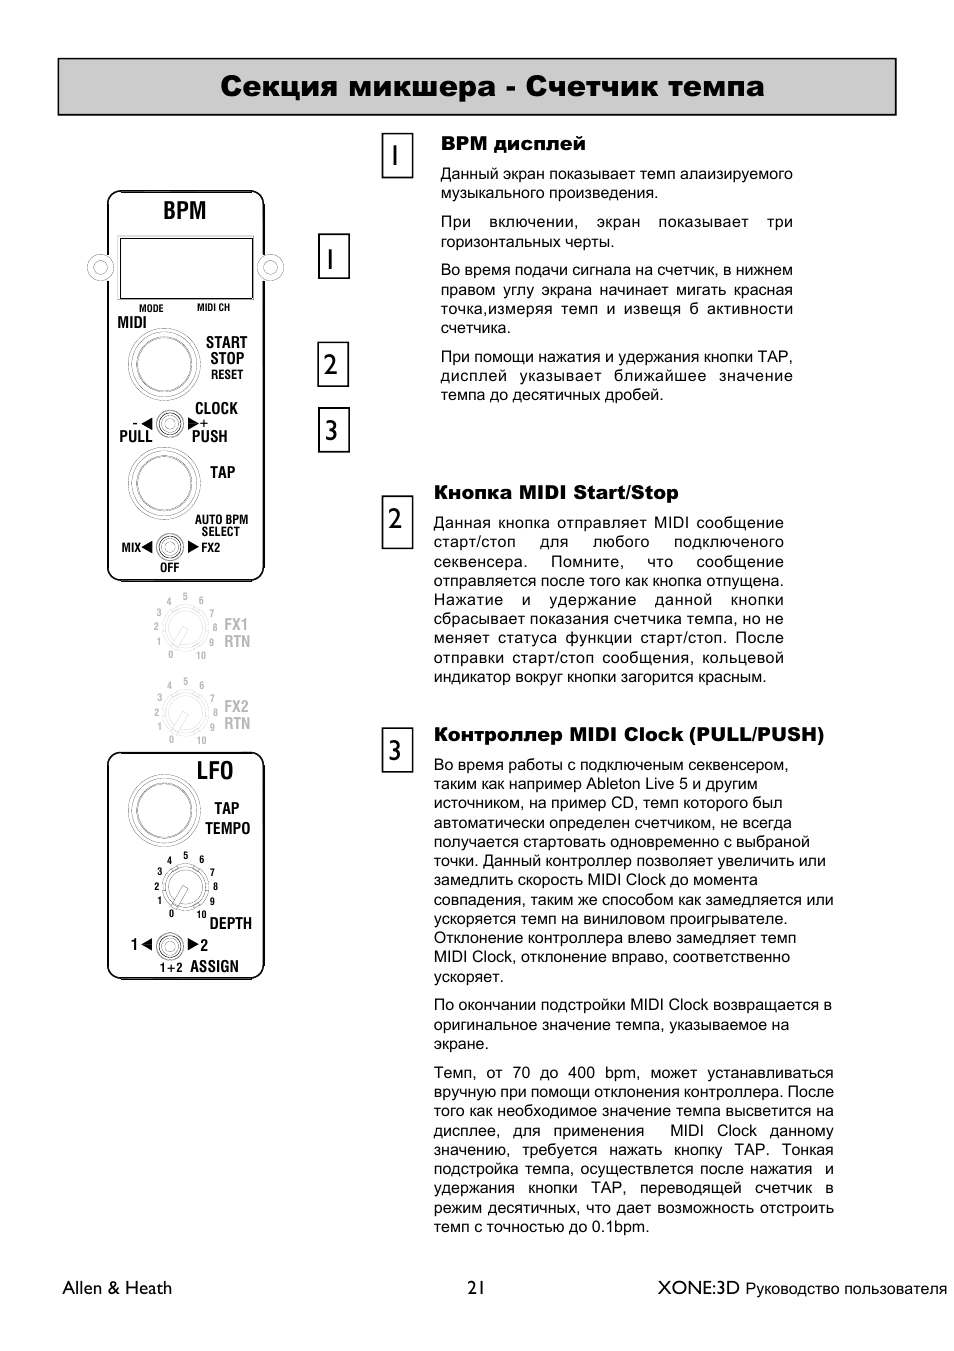 XONE 3d_ap6388_1 User Manual | Page 21 / 43